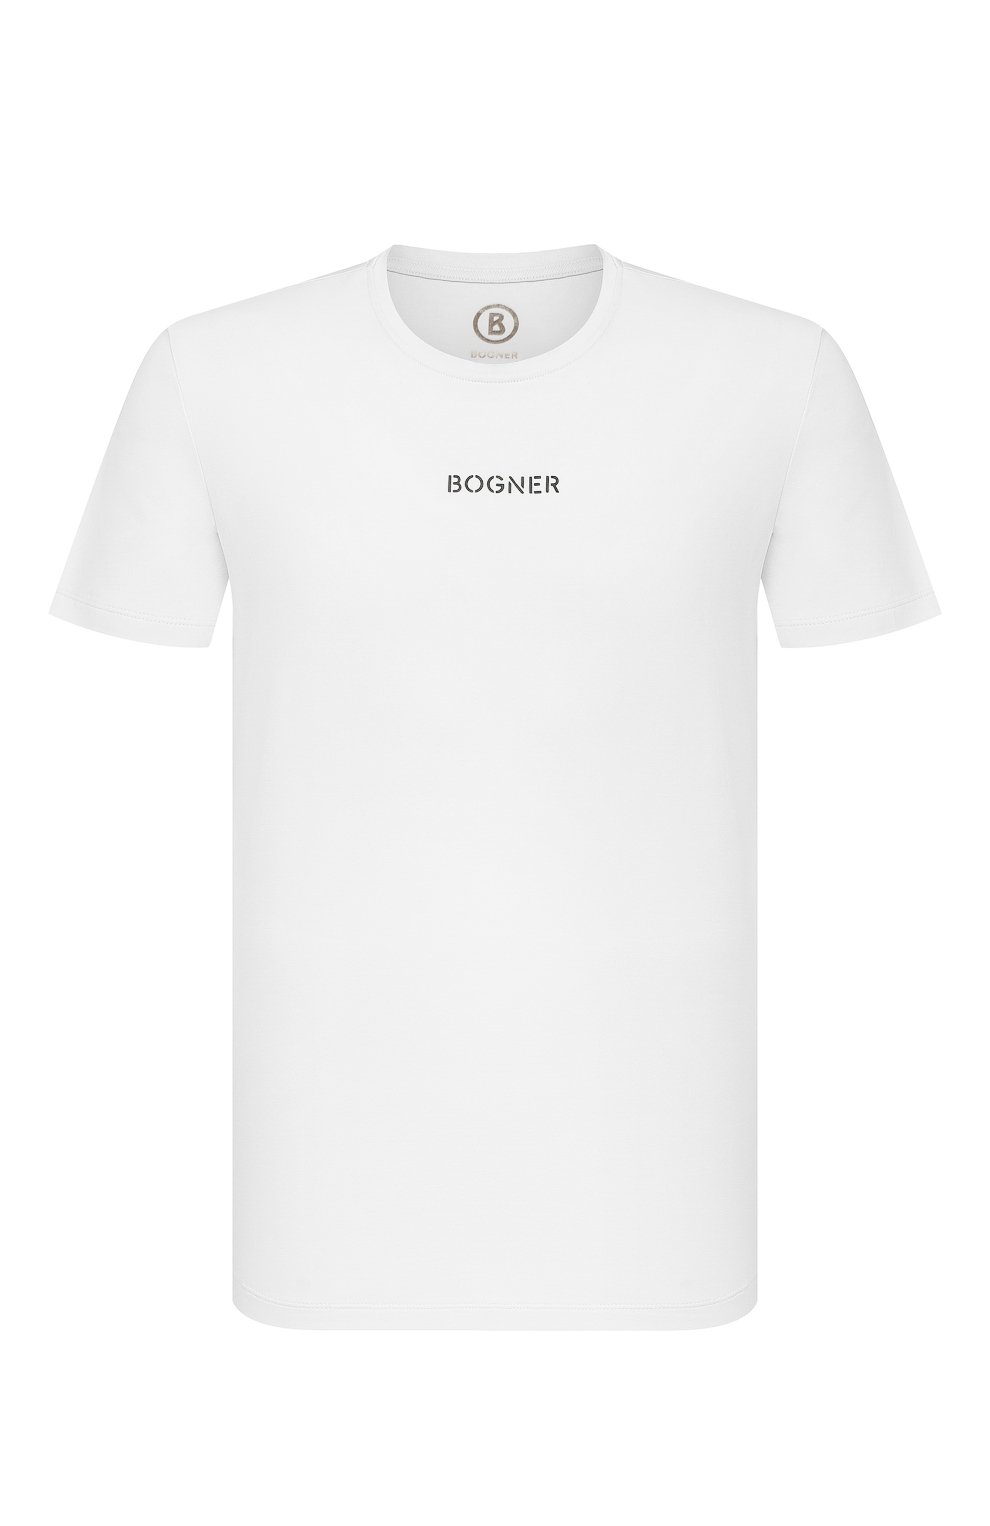 Футболки Bogner, Хлопковая футболка Bogner, Португалия, Белый, Хлопок: 95%; Эластан: 5%;, 12609246  - купить